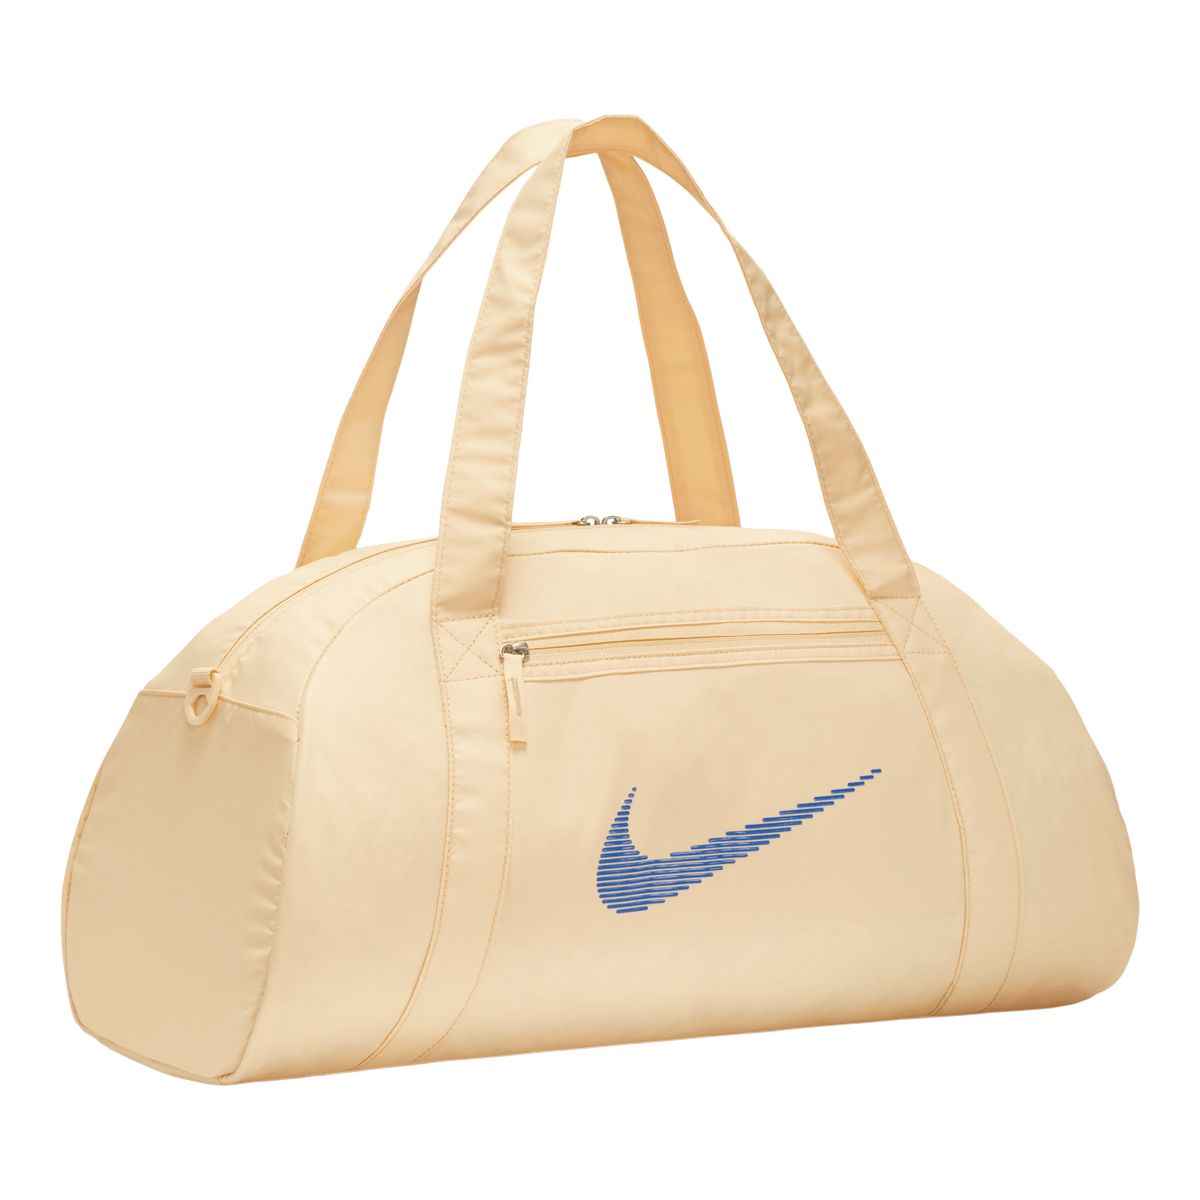 Nike Woman's Gym Club Duffle Bag